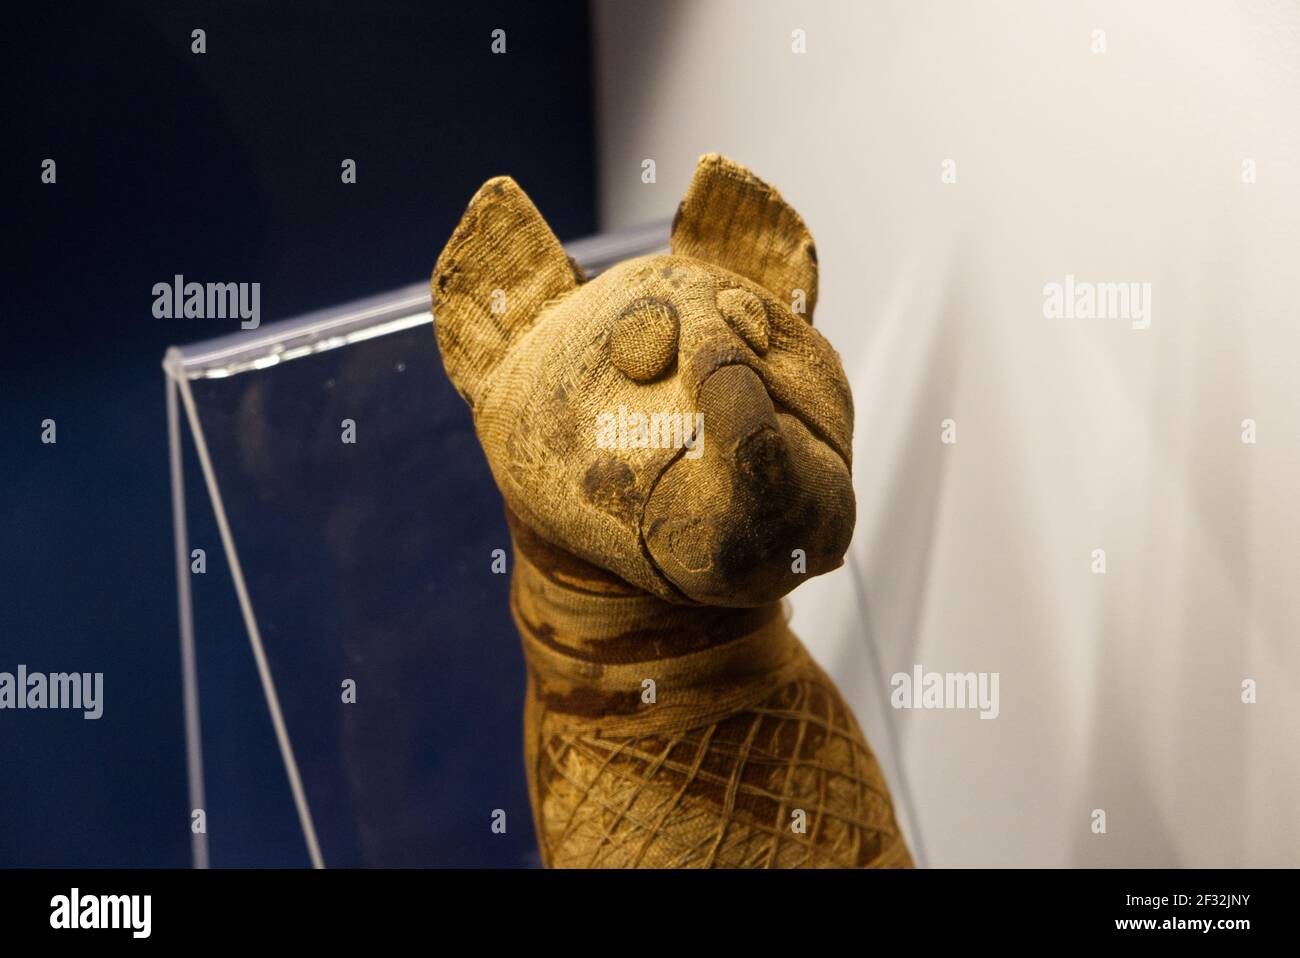 Musée égyptien, Italie - février 2021 : momie d'un chat pour un sacrifice rituel Banque D'Images